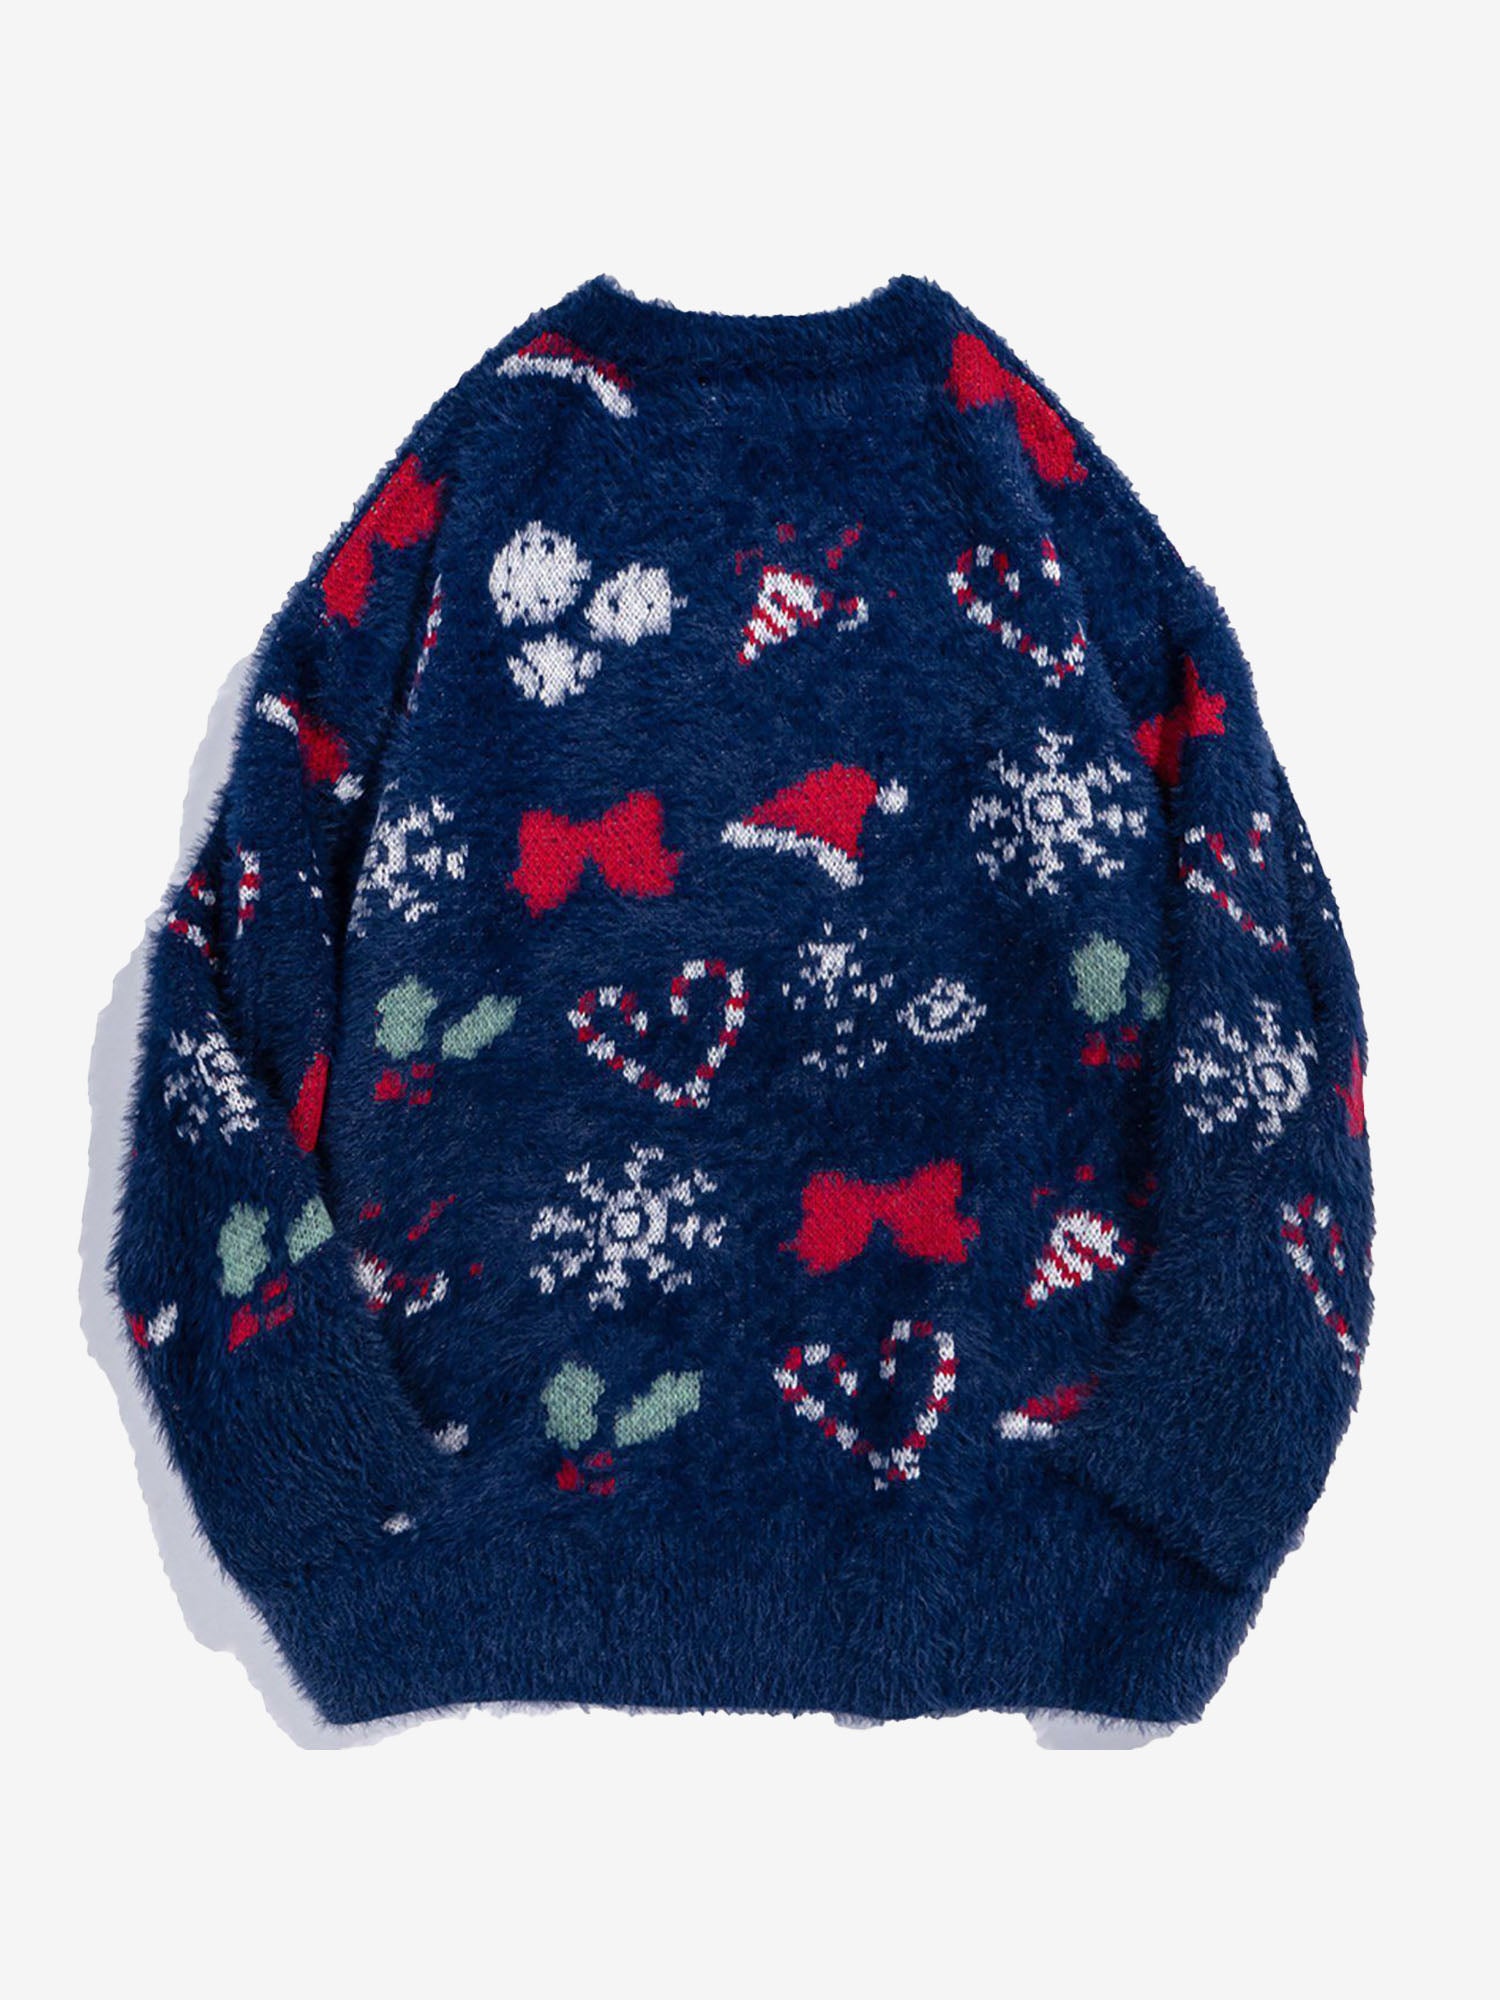 Chandail tricoté imprimé éléments de Noël Justnotag